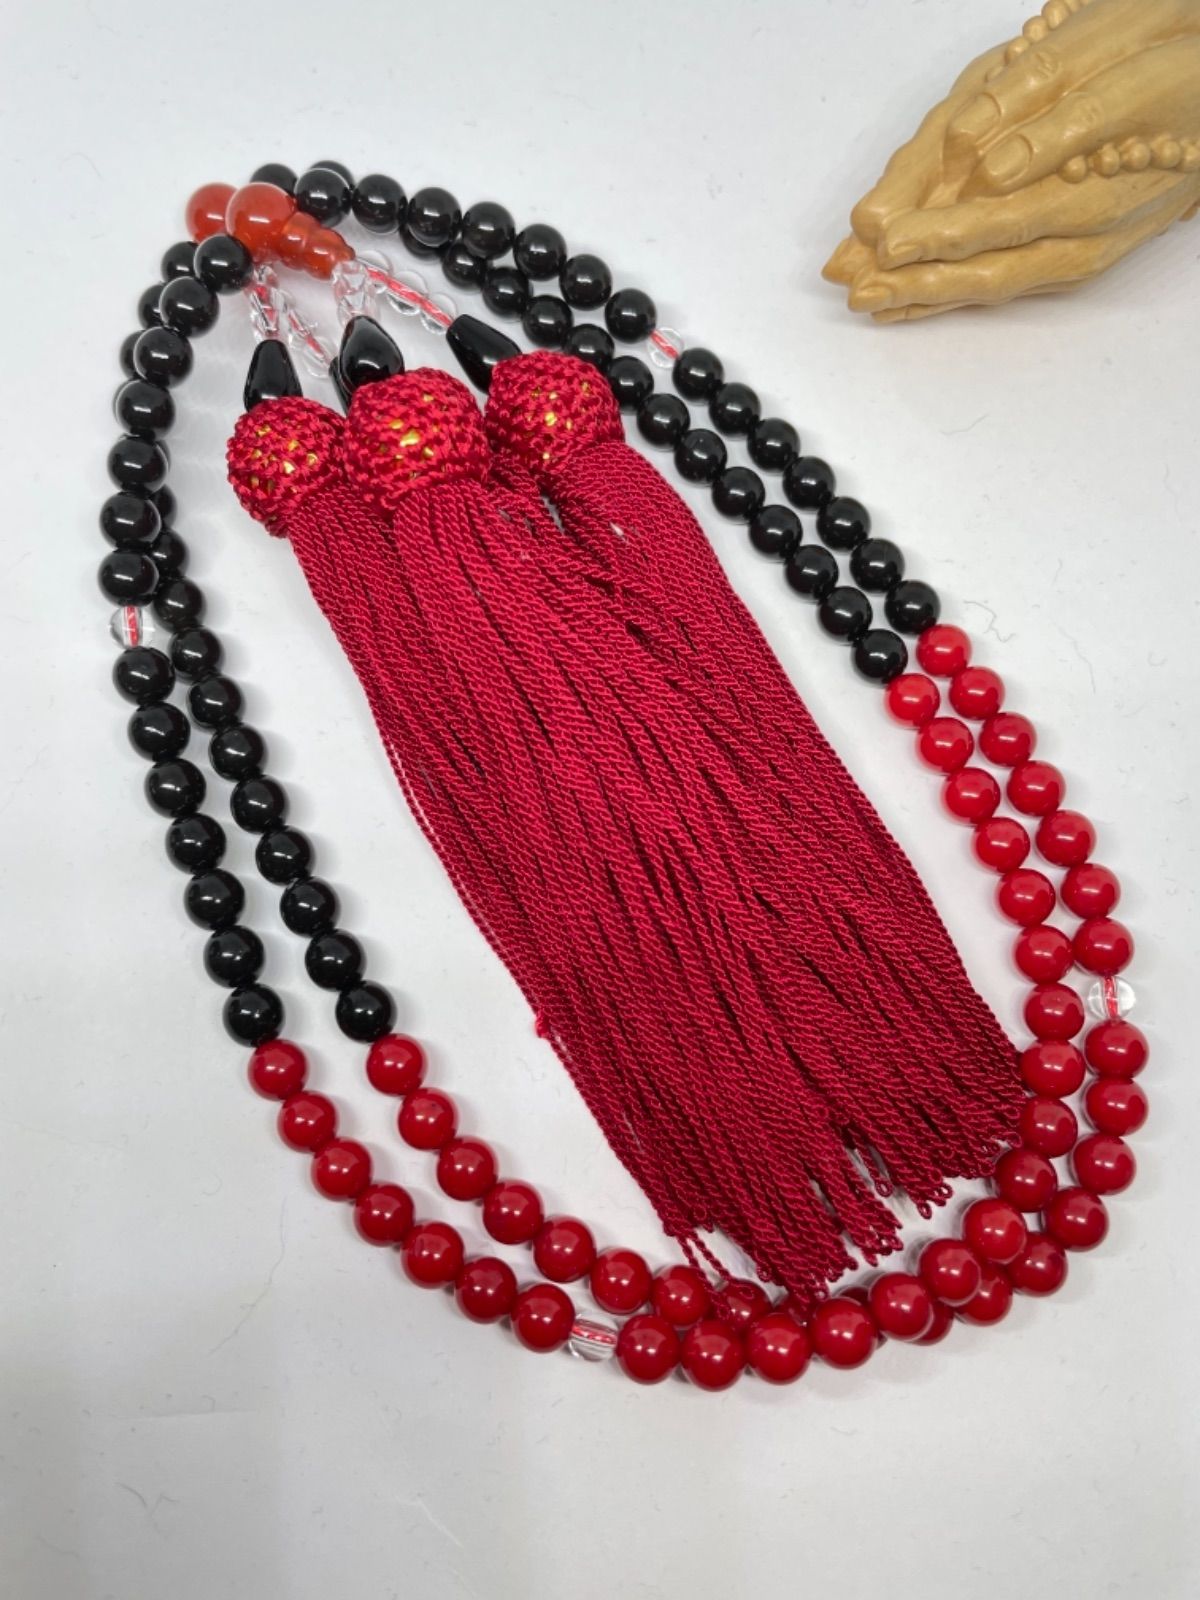 イヤナイト 全宗派共通︎本式108珠念珠︎グリーンカイヤナイト︎数珠の シルク